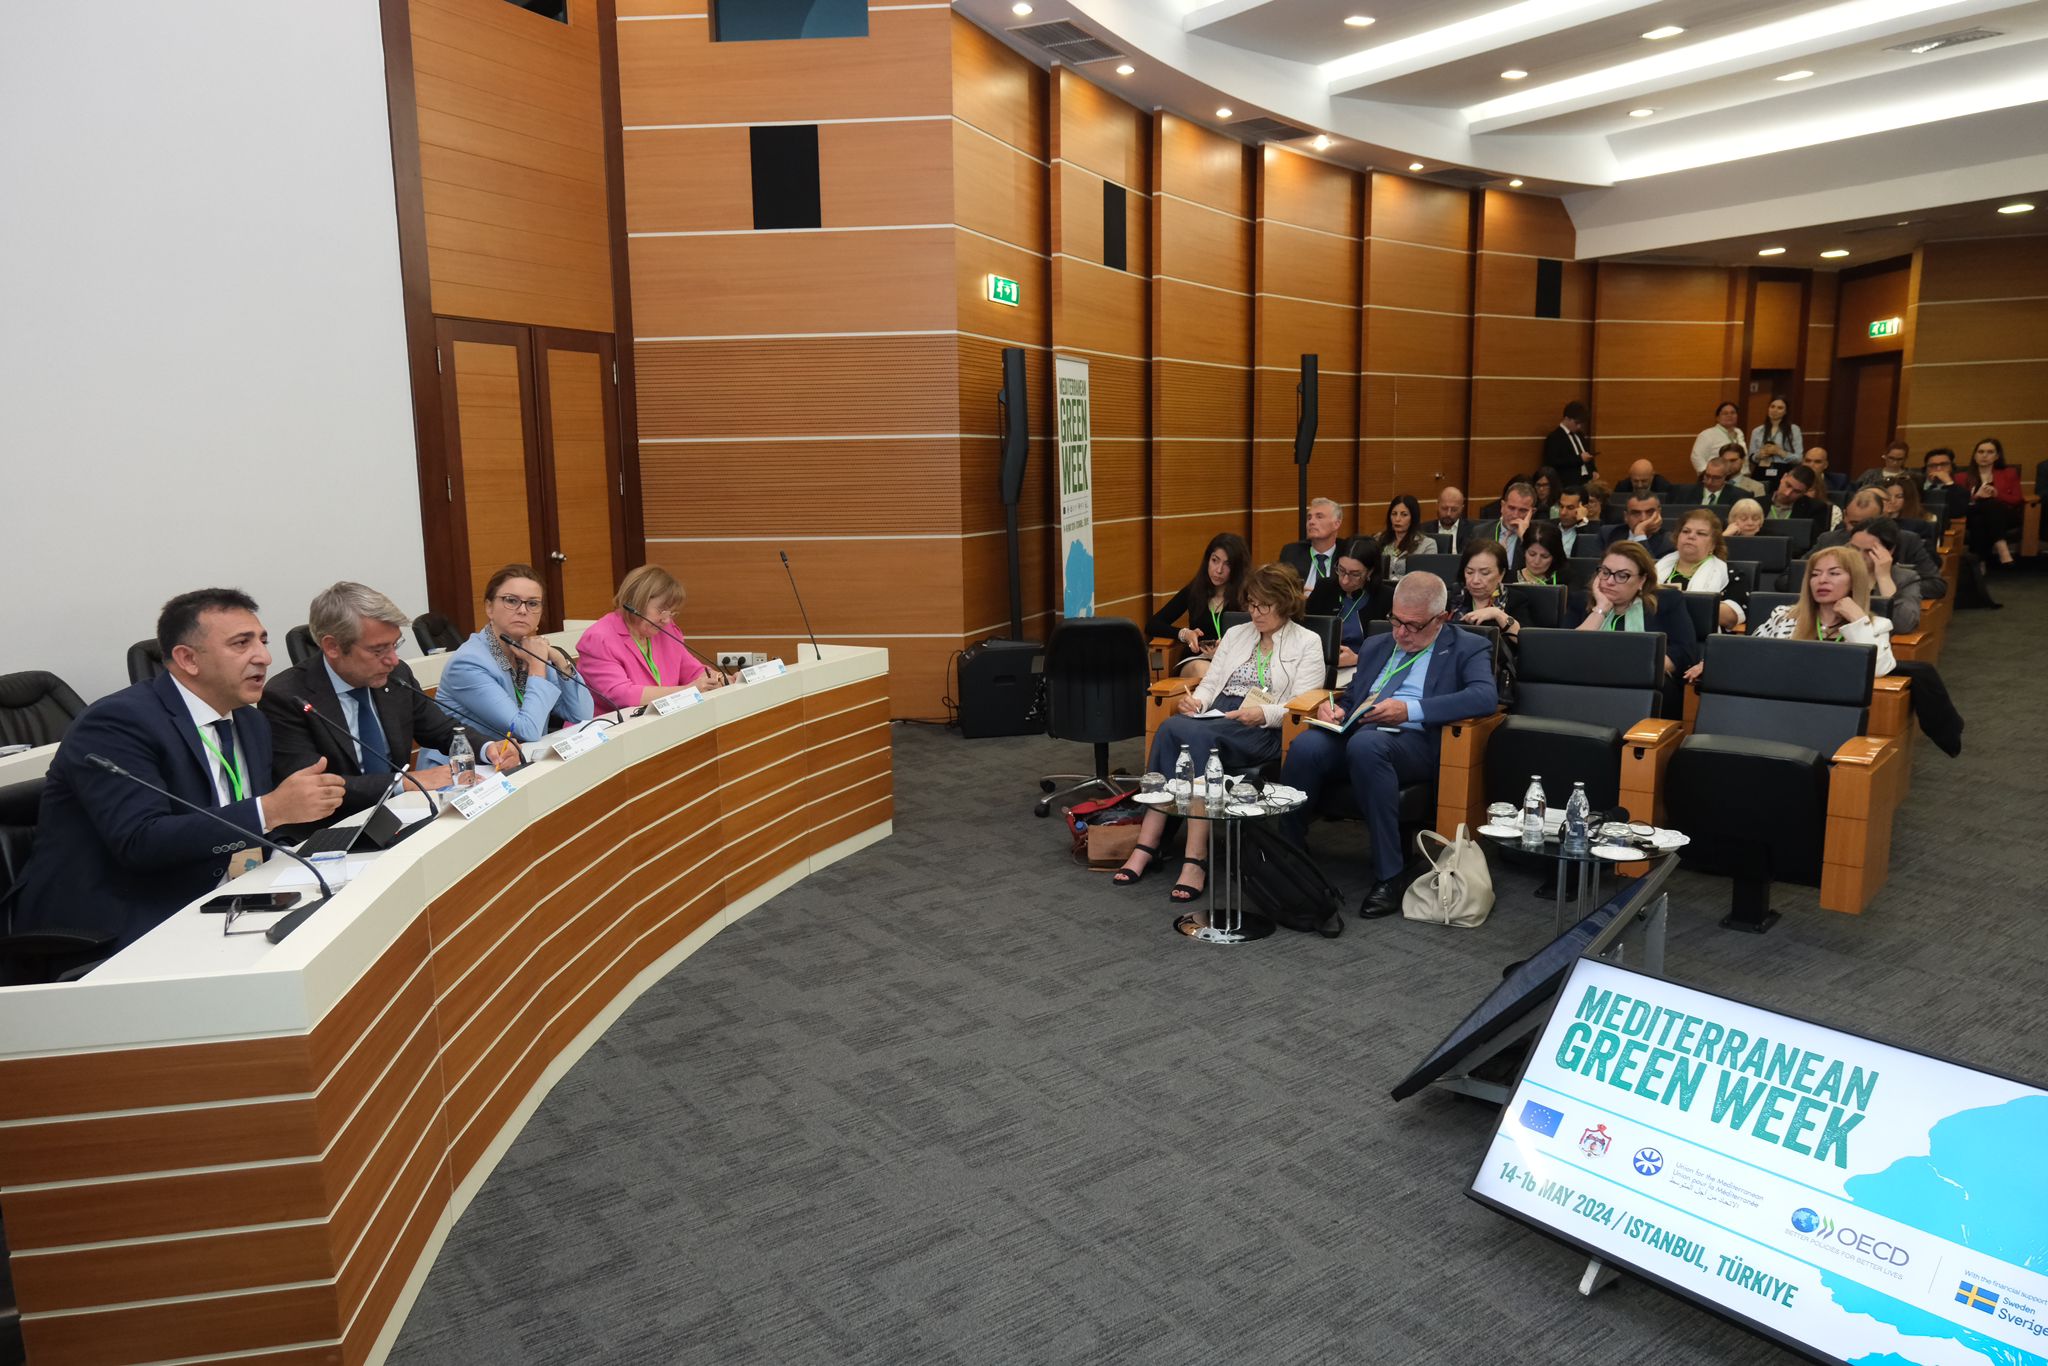 İklim Değişikliği Başkanı OECD’nin düzenlemiş olduğu Akdeniz Haftası’nın Üst Düzey Genel Kurulu’na katılım sağladı